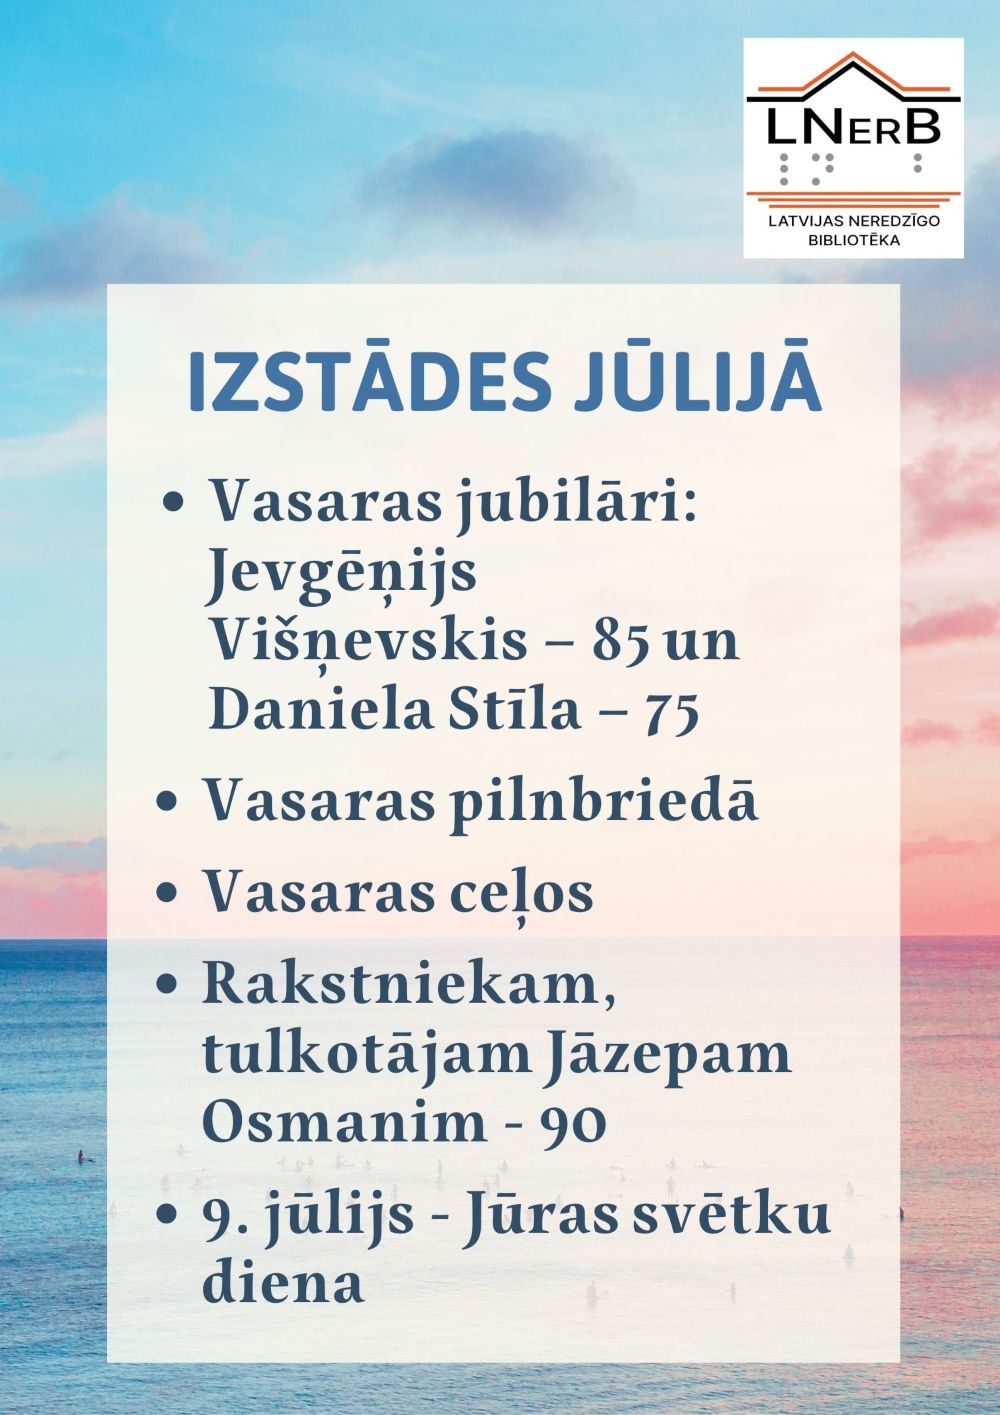 Plakāts "Izstādes jūlijā Rīgā. 2022"